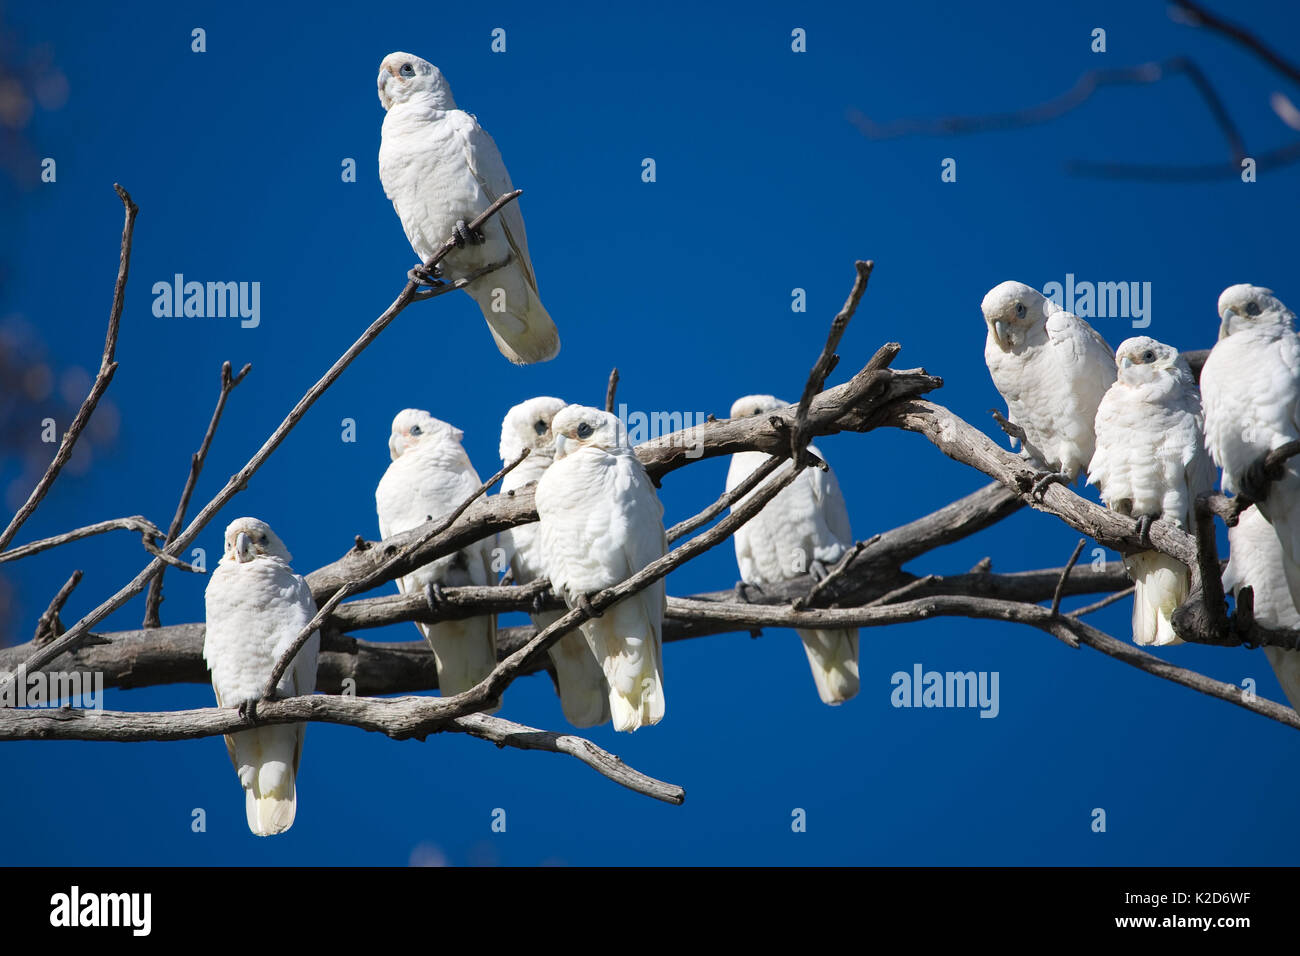 Un gregge di little Corella's doze in un albero morto, mentre un uccello resta vigile. Questi uccelli si radunano in grandi numeri, rovistando sul terreno Foto Stock